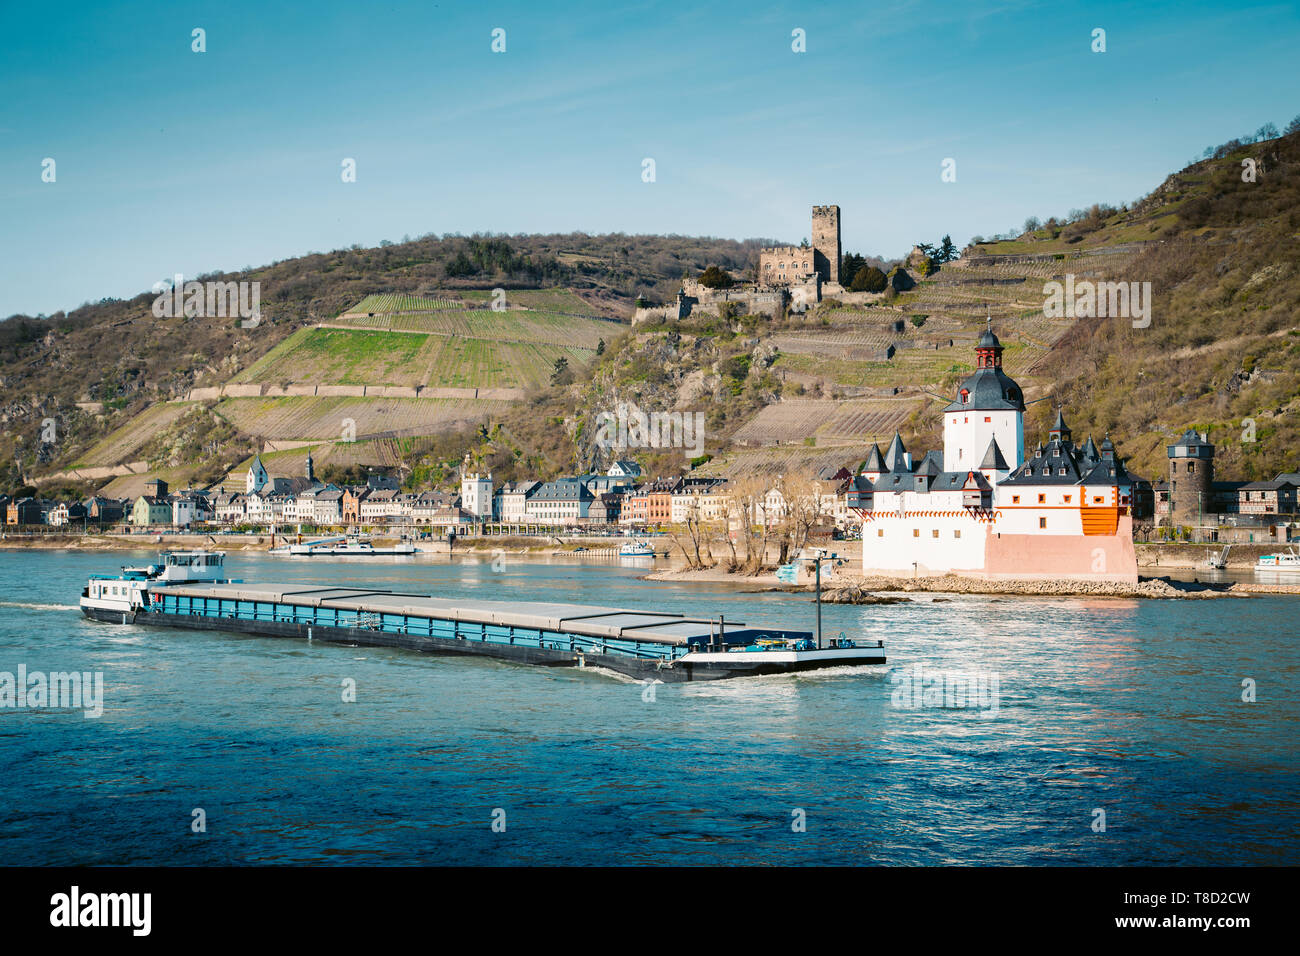 Hermosa vista de la ciudad histórica de Kaub Burg Pfalzgrafenstein con famosos a lo largo del río Rin en un pintoresco día soleado con el cielo azul en primavera, Rheinla Foto de stock